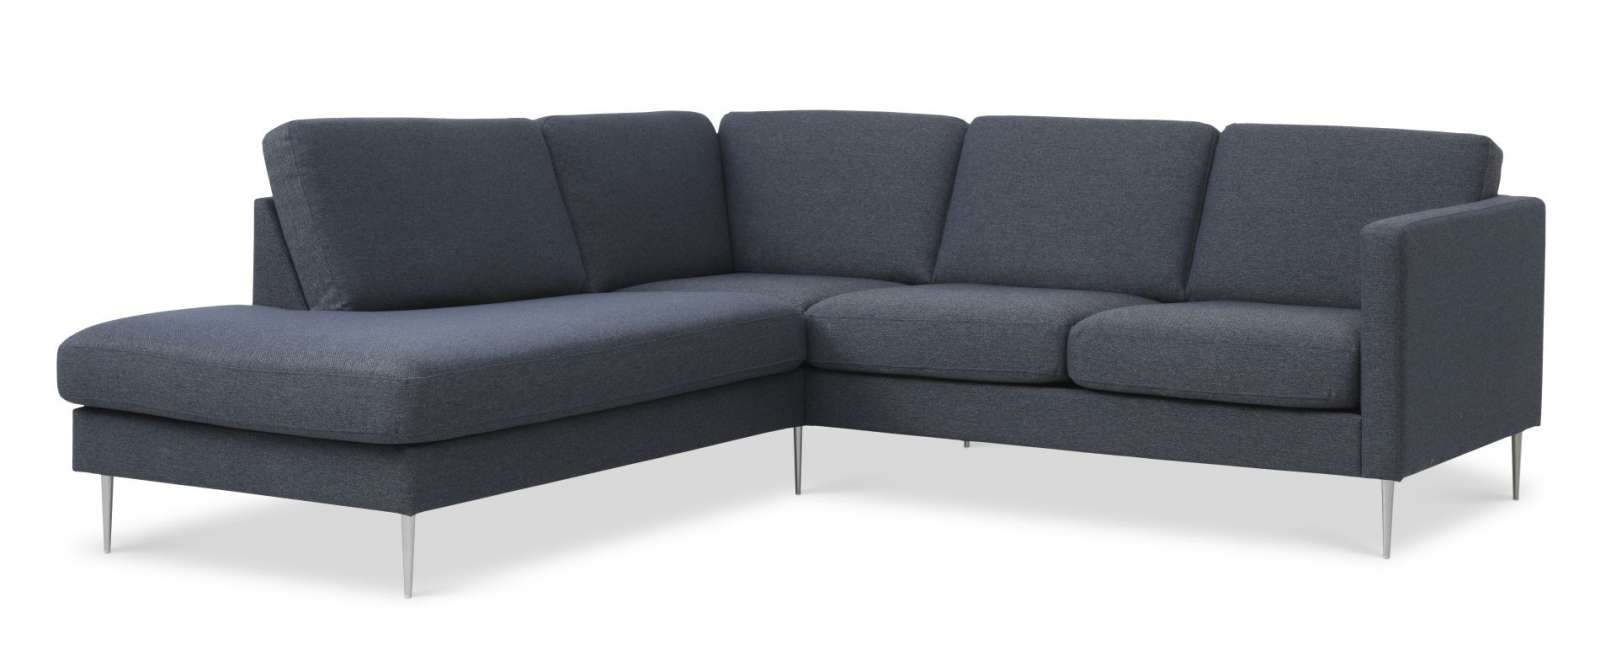 Priser på Ask sæt 52 lille OE sofa, m. venstre chaiselong - navy blå polyester stof og børstet aluminium